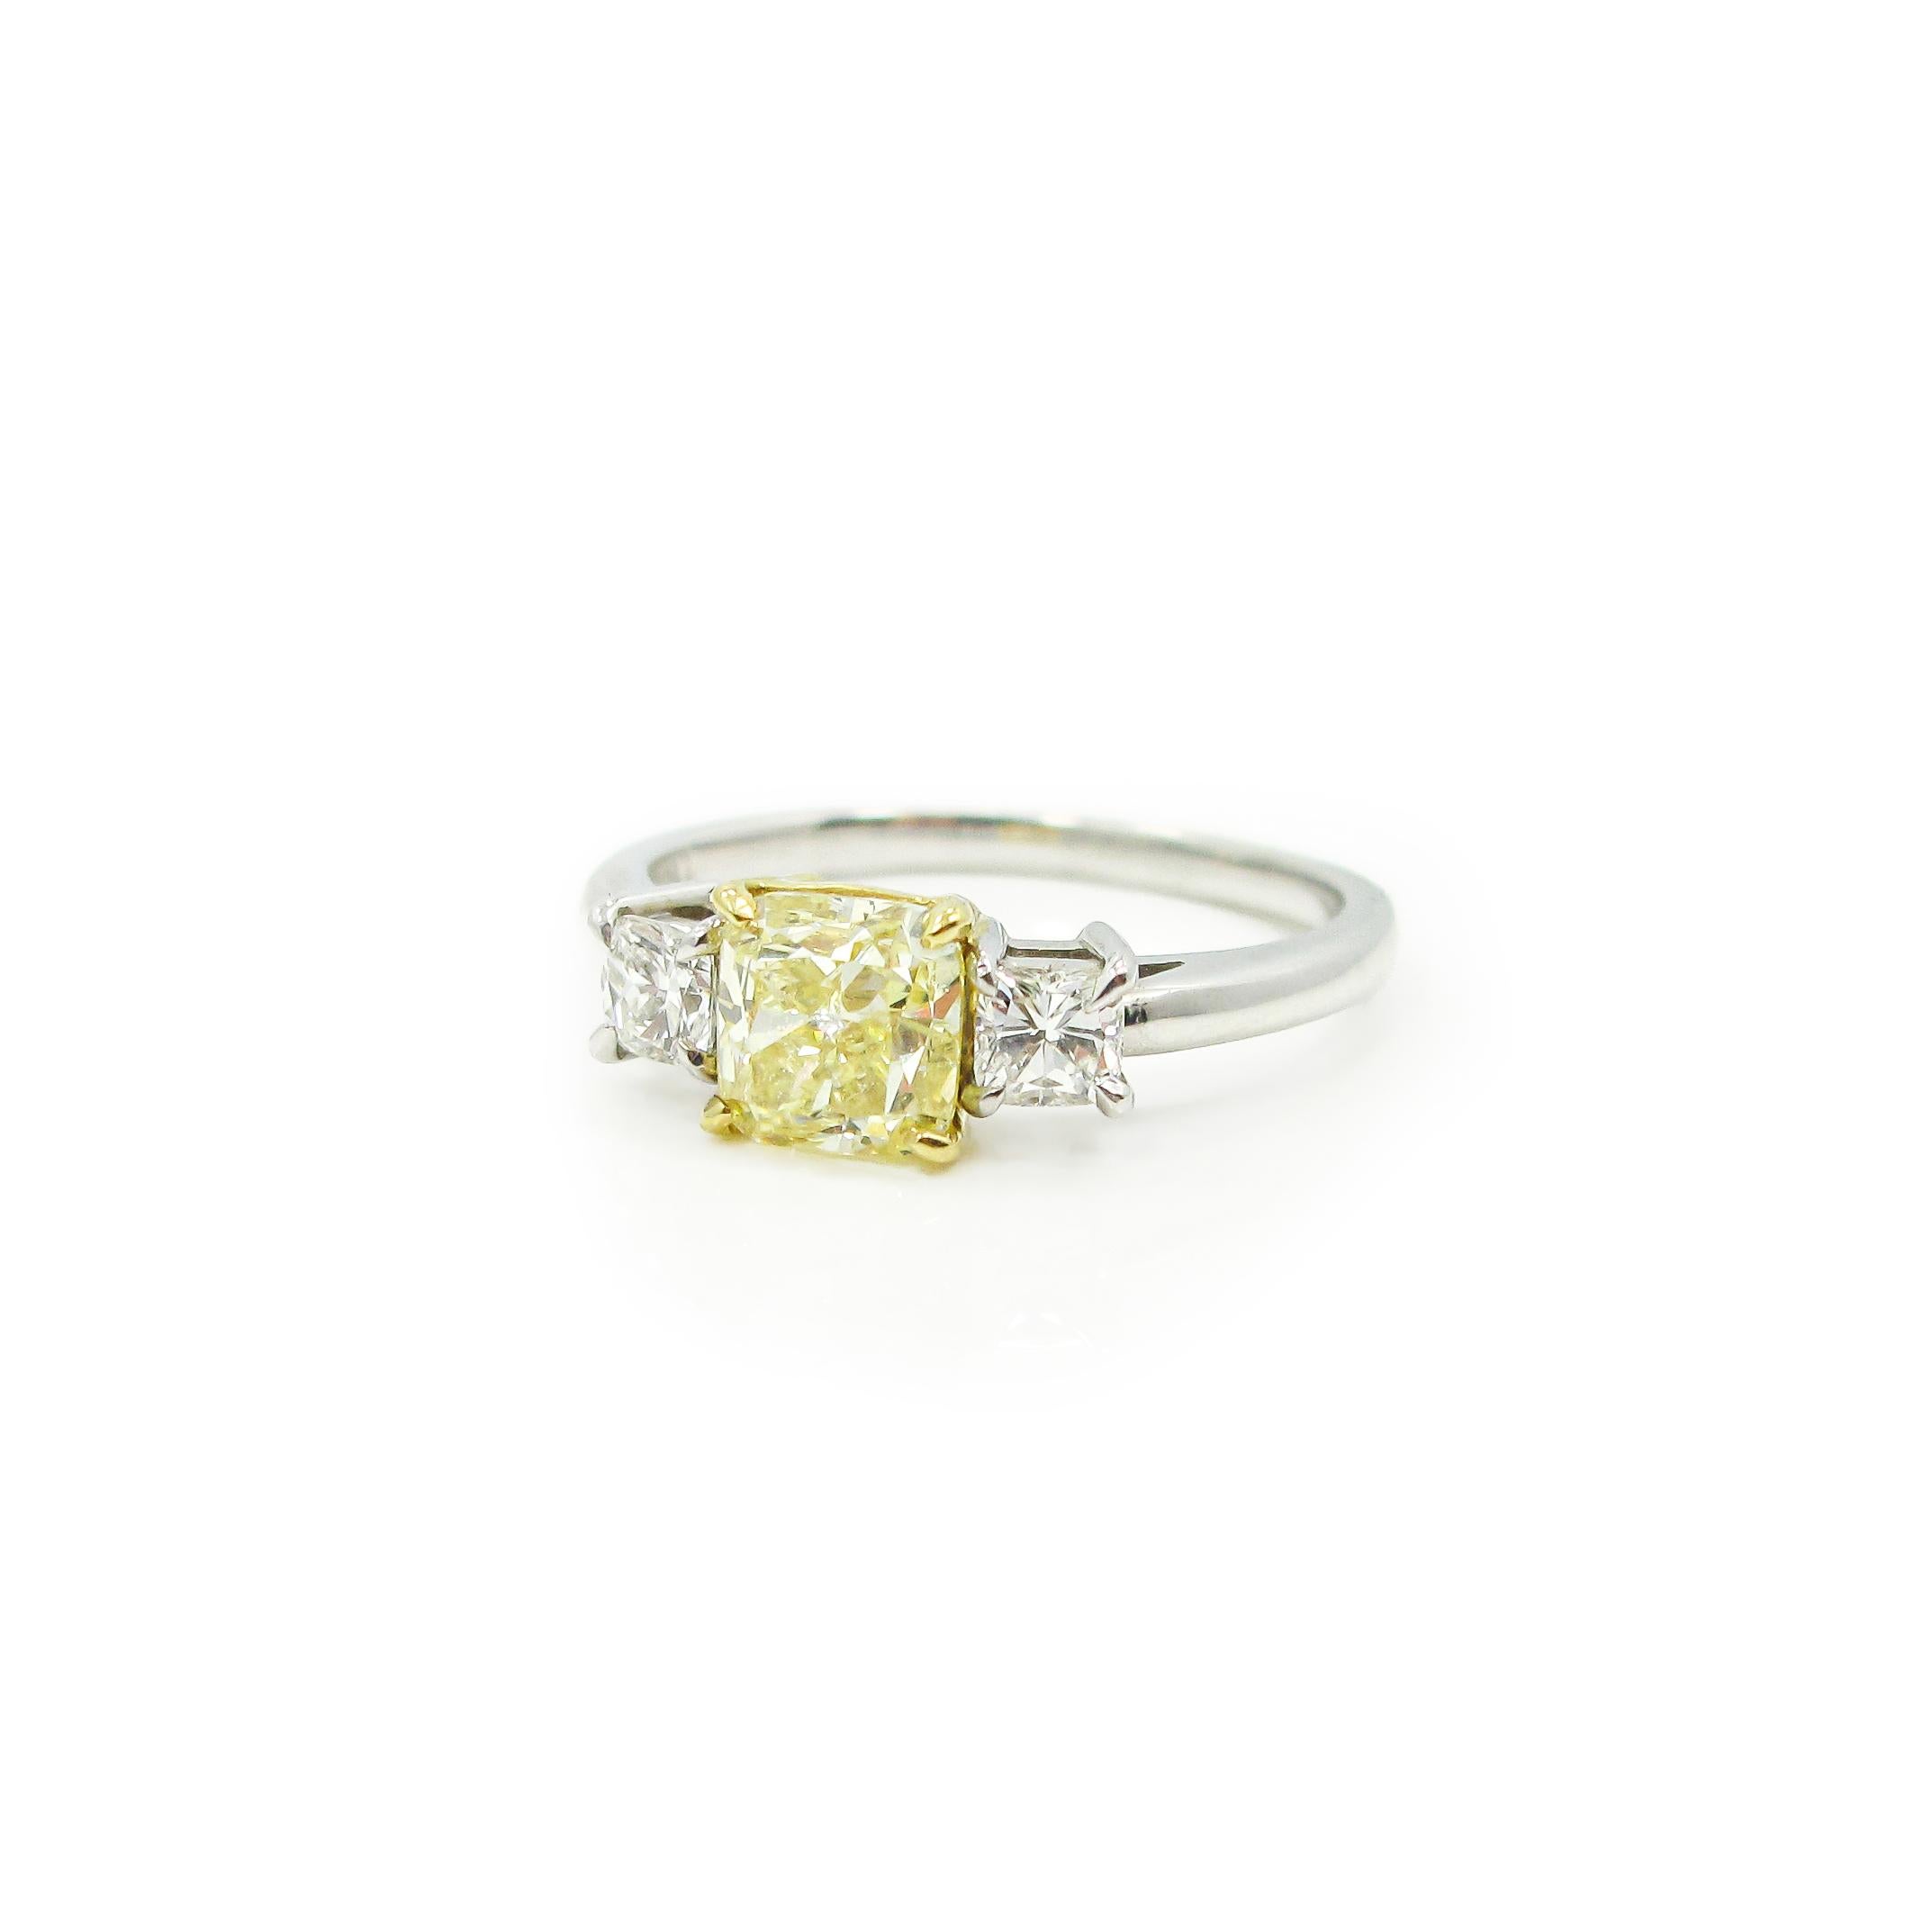 La pierre centrale est un diamant jaune fantaisie de taille coussin pesant 1,04ct. et est accompagnée d'une certification GIA. Le diamant jaune est serti dans un panier en or jaune 18 carats entre deux diamants de taille coussin d'un poids total